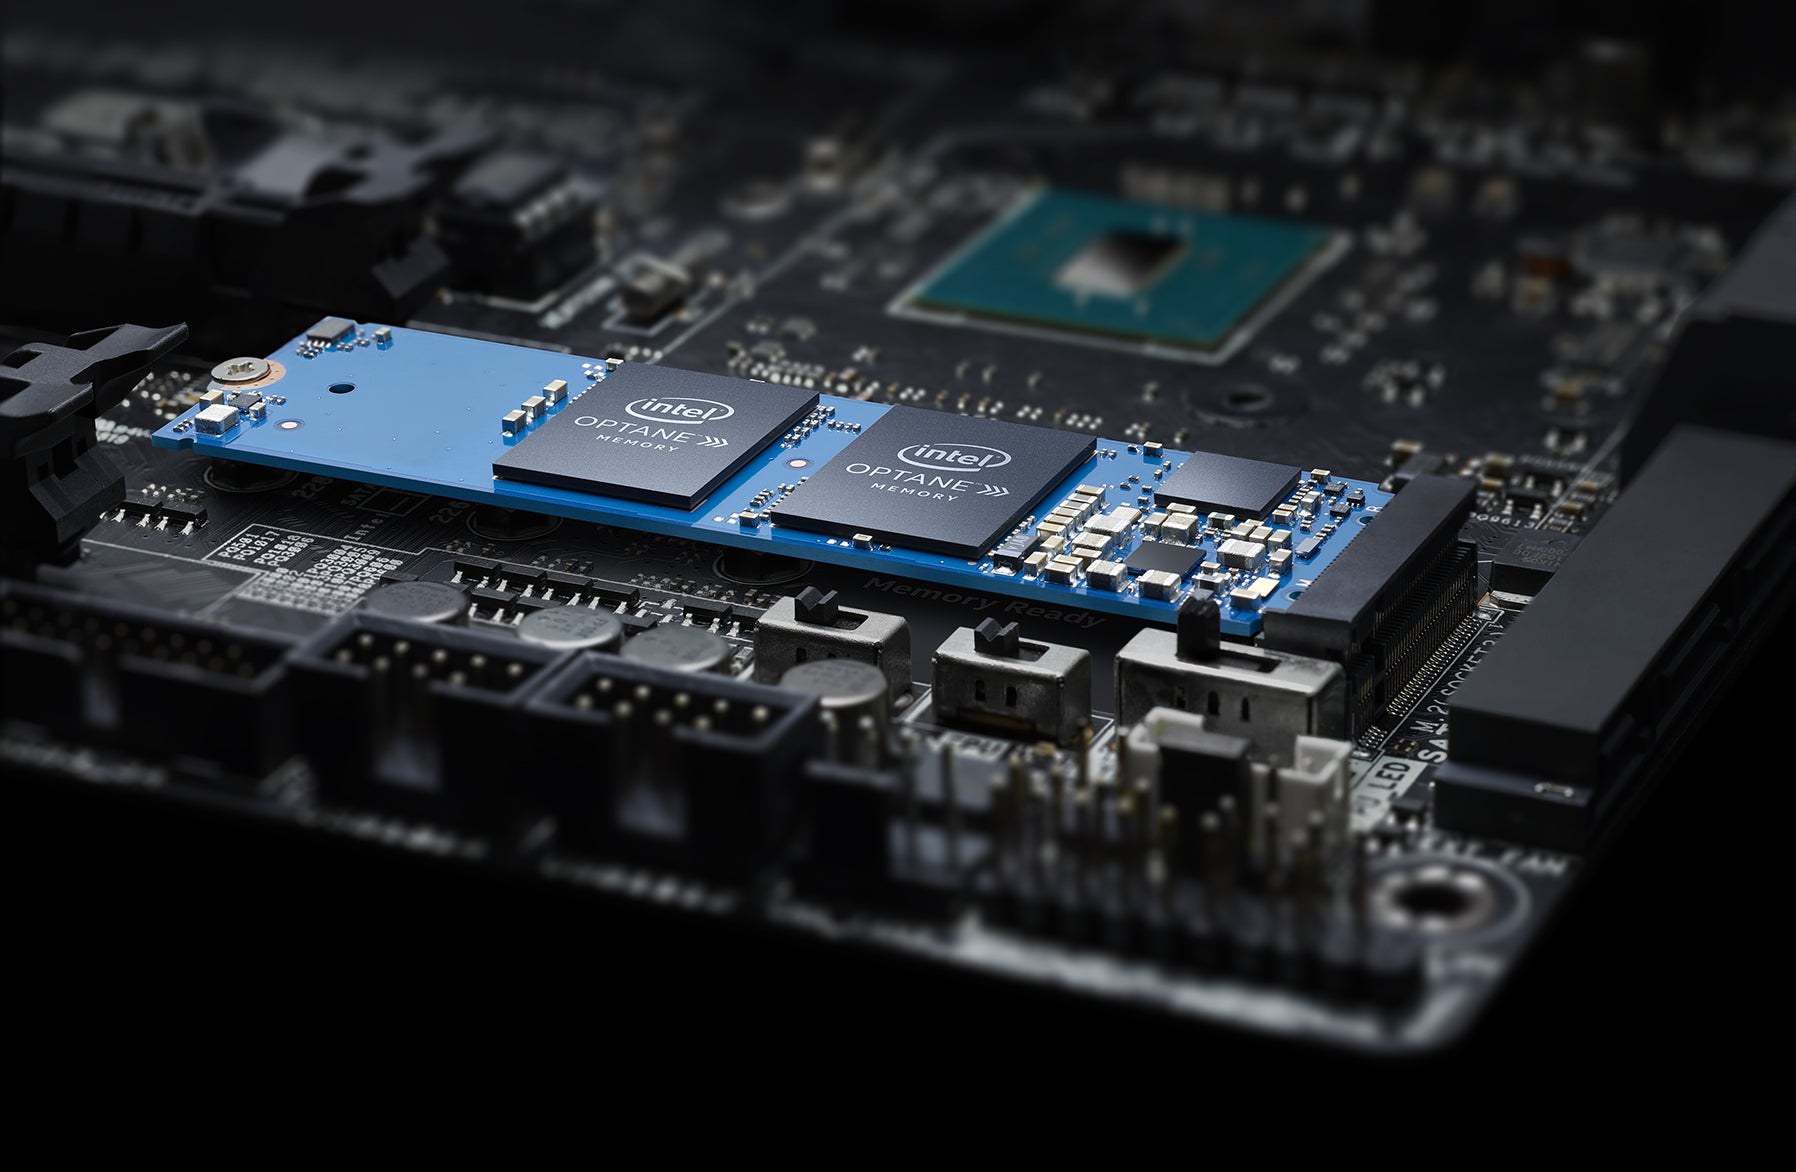 Procesor i5-12600K ponka podporu Intel Optane Memory pre najnovie cachovacie pamte, ktor doku zrchli v platov disk o niekoko desiatok %.